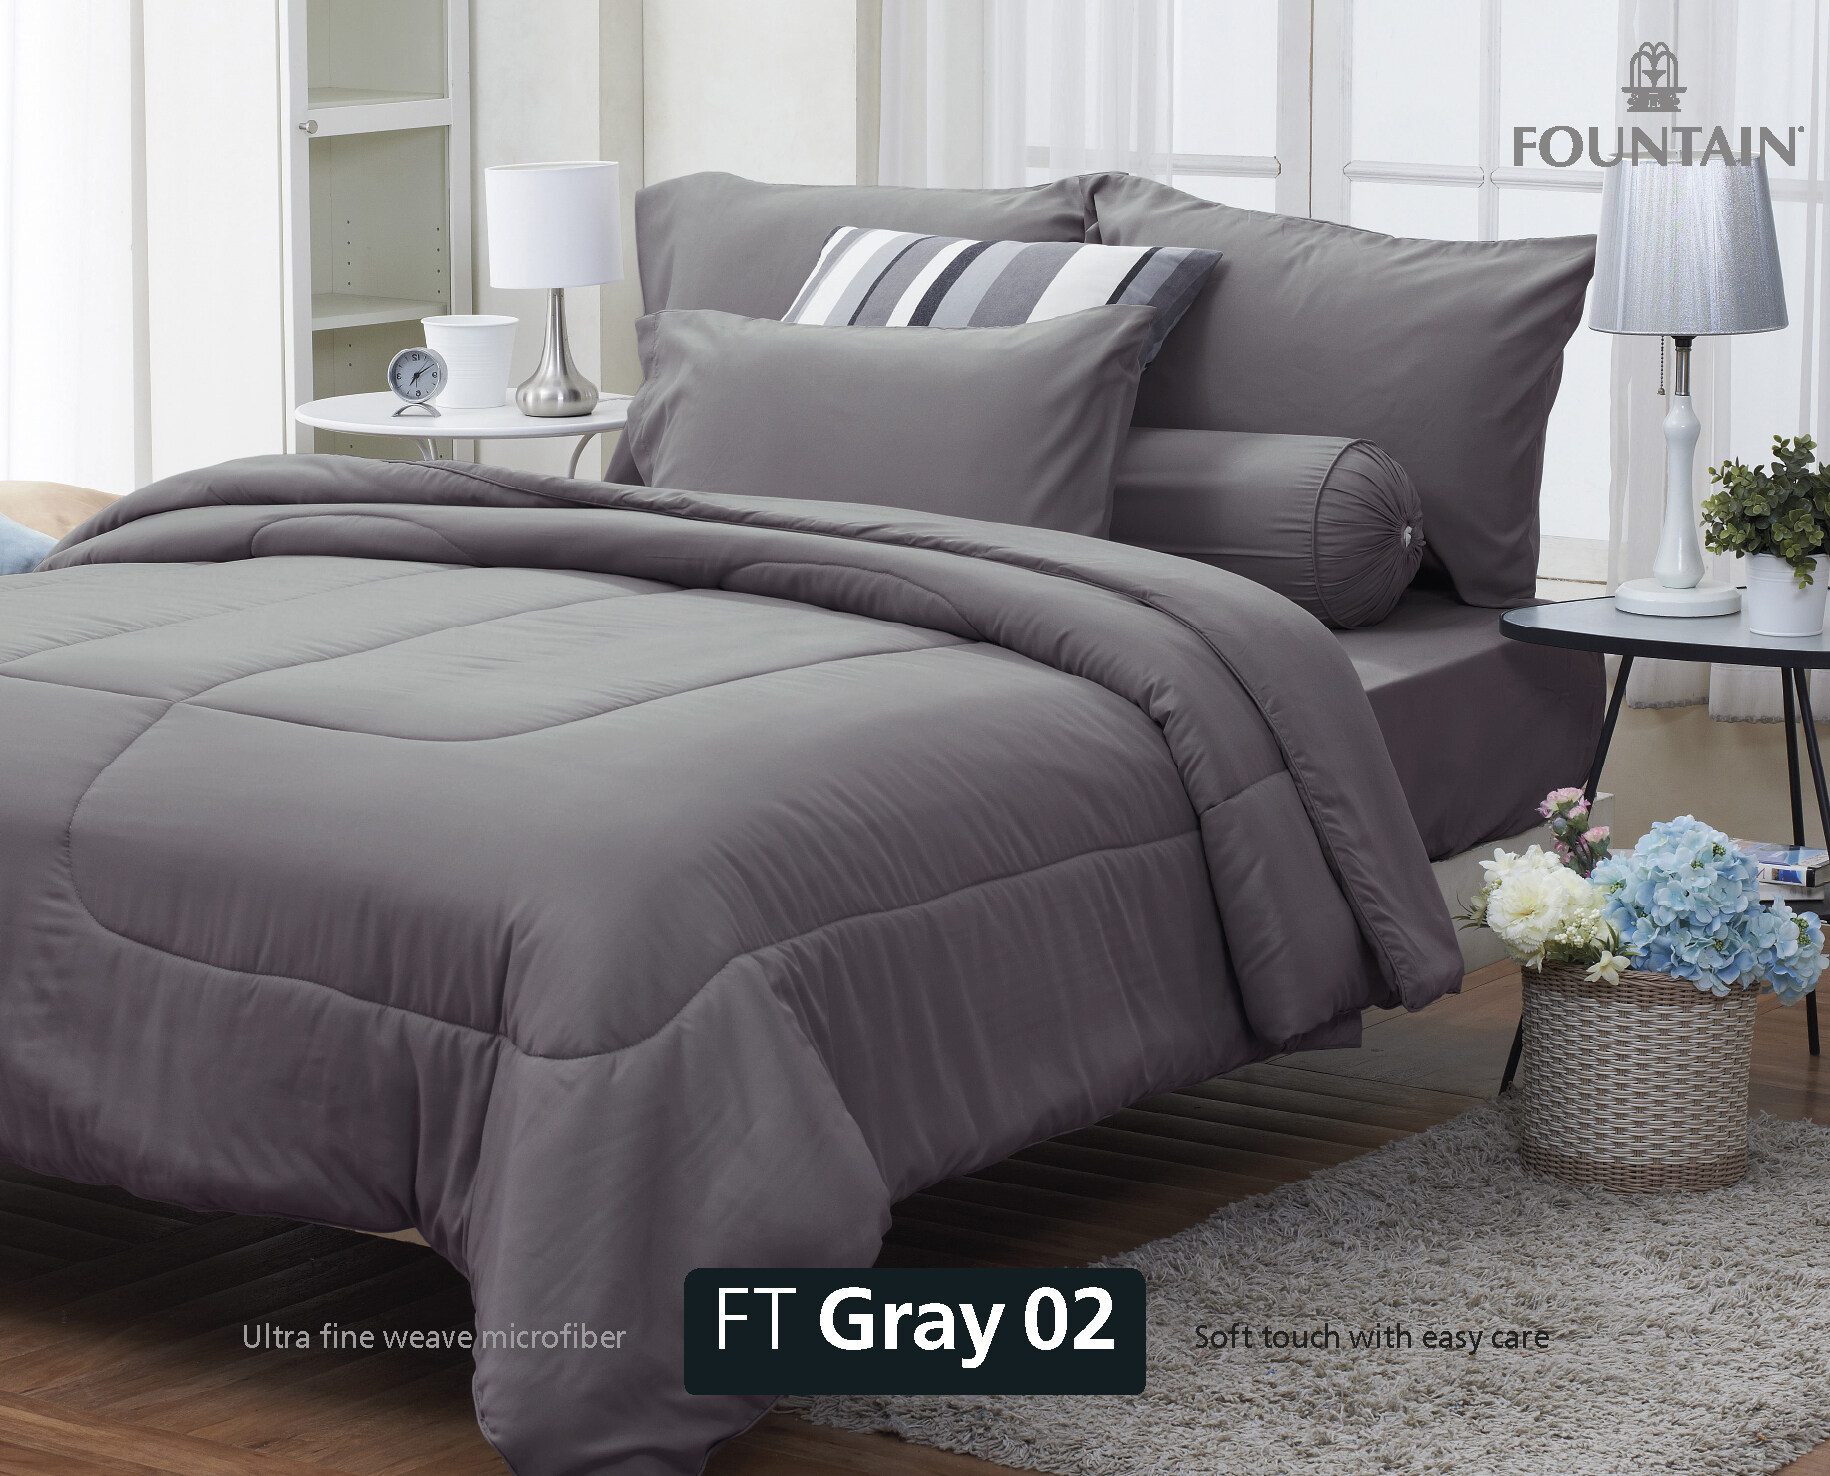 FOUNTAIN ผ้านวม + ชุดผ้าปู ผ้าปู ที่นอน แท้ 100% FTC สีพื้น เขียว Green Gray เทา ขนาด 3.5 5 6ฟุต ชุดเครื่องนอน ผ้านวม ผ้าปูที่นอน wonderful bedding  สี → Gray3ขนาดสินค้า 3.5 ฟุต